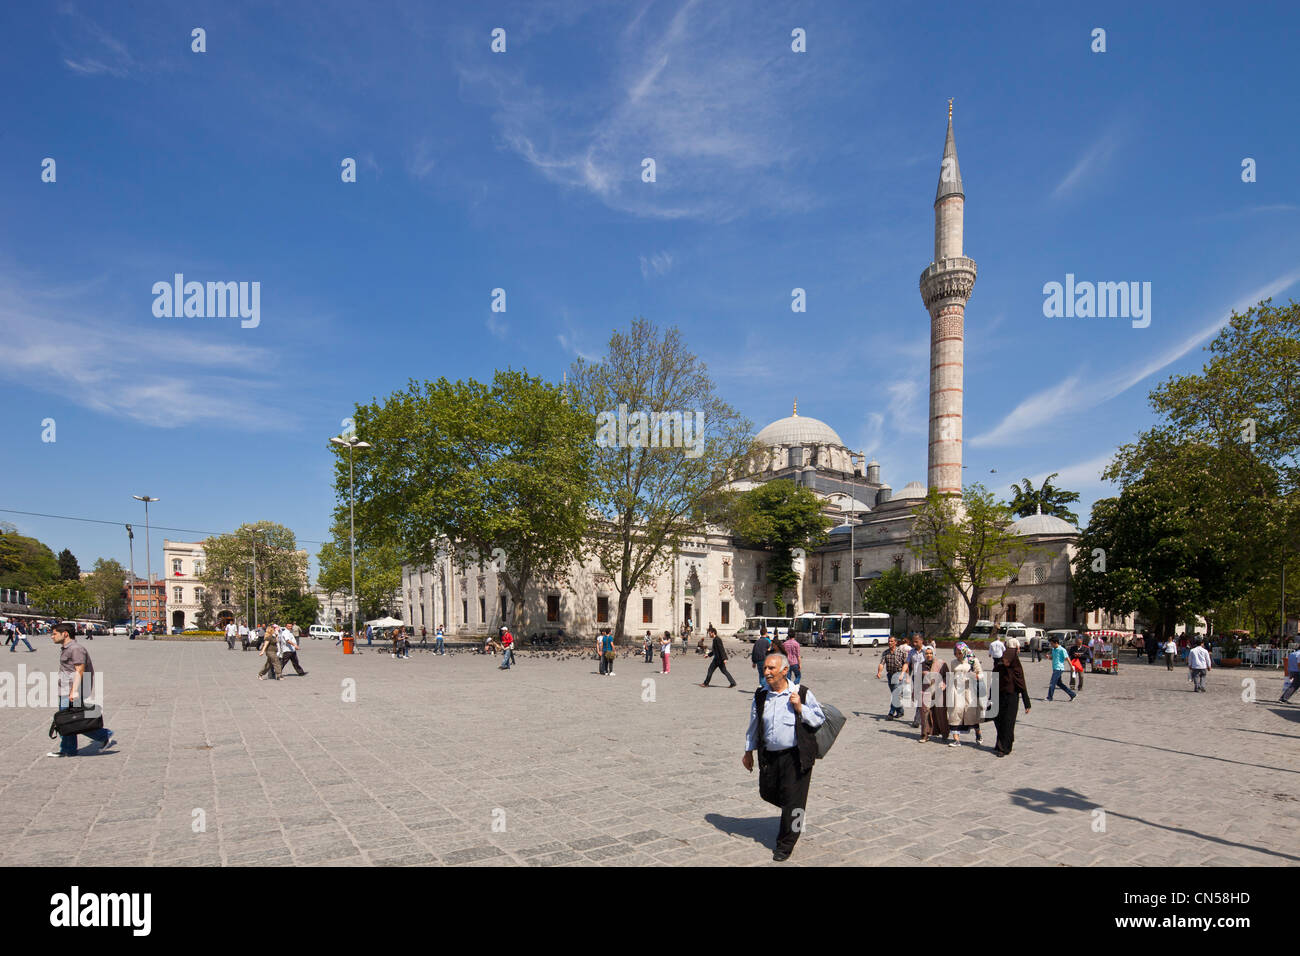 Turchia, Istanbul, centro storico sono classificati come patrimonio mondiale dall' UNESCO, il quartiere di Sultanahmet, la piazza e la Moschea Beyazit Foto Stock